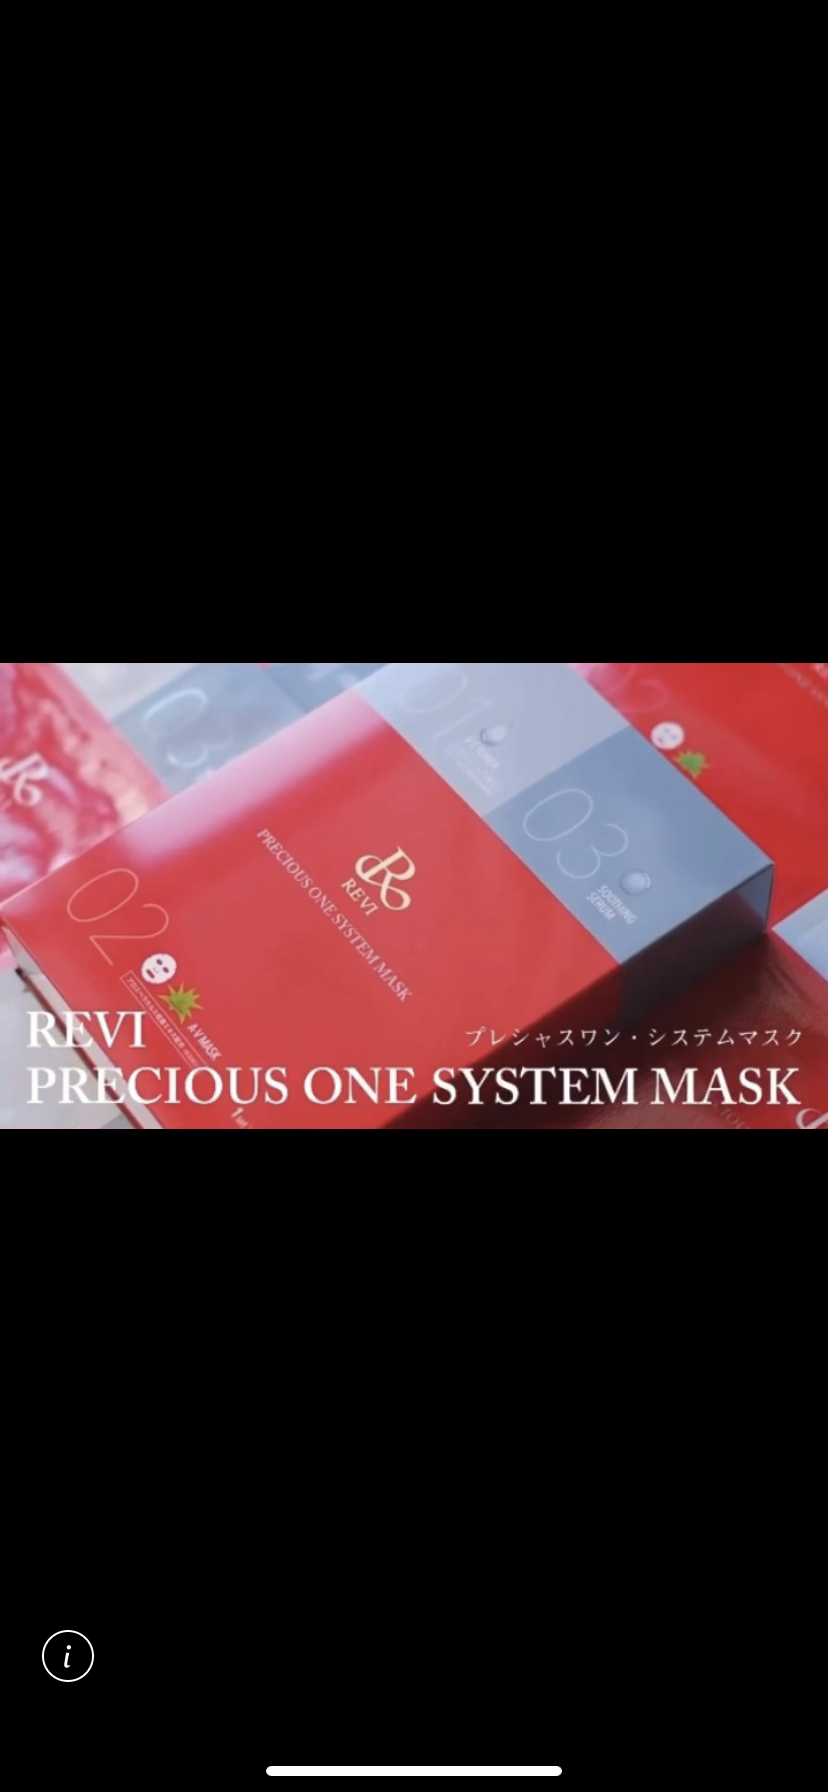 REVIプレシャスワン システムマスク 定価16,500円 - パック/フェイスマスク